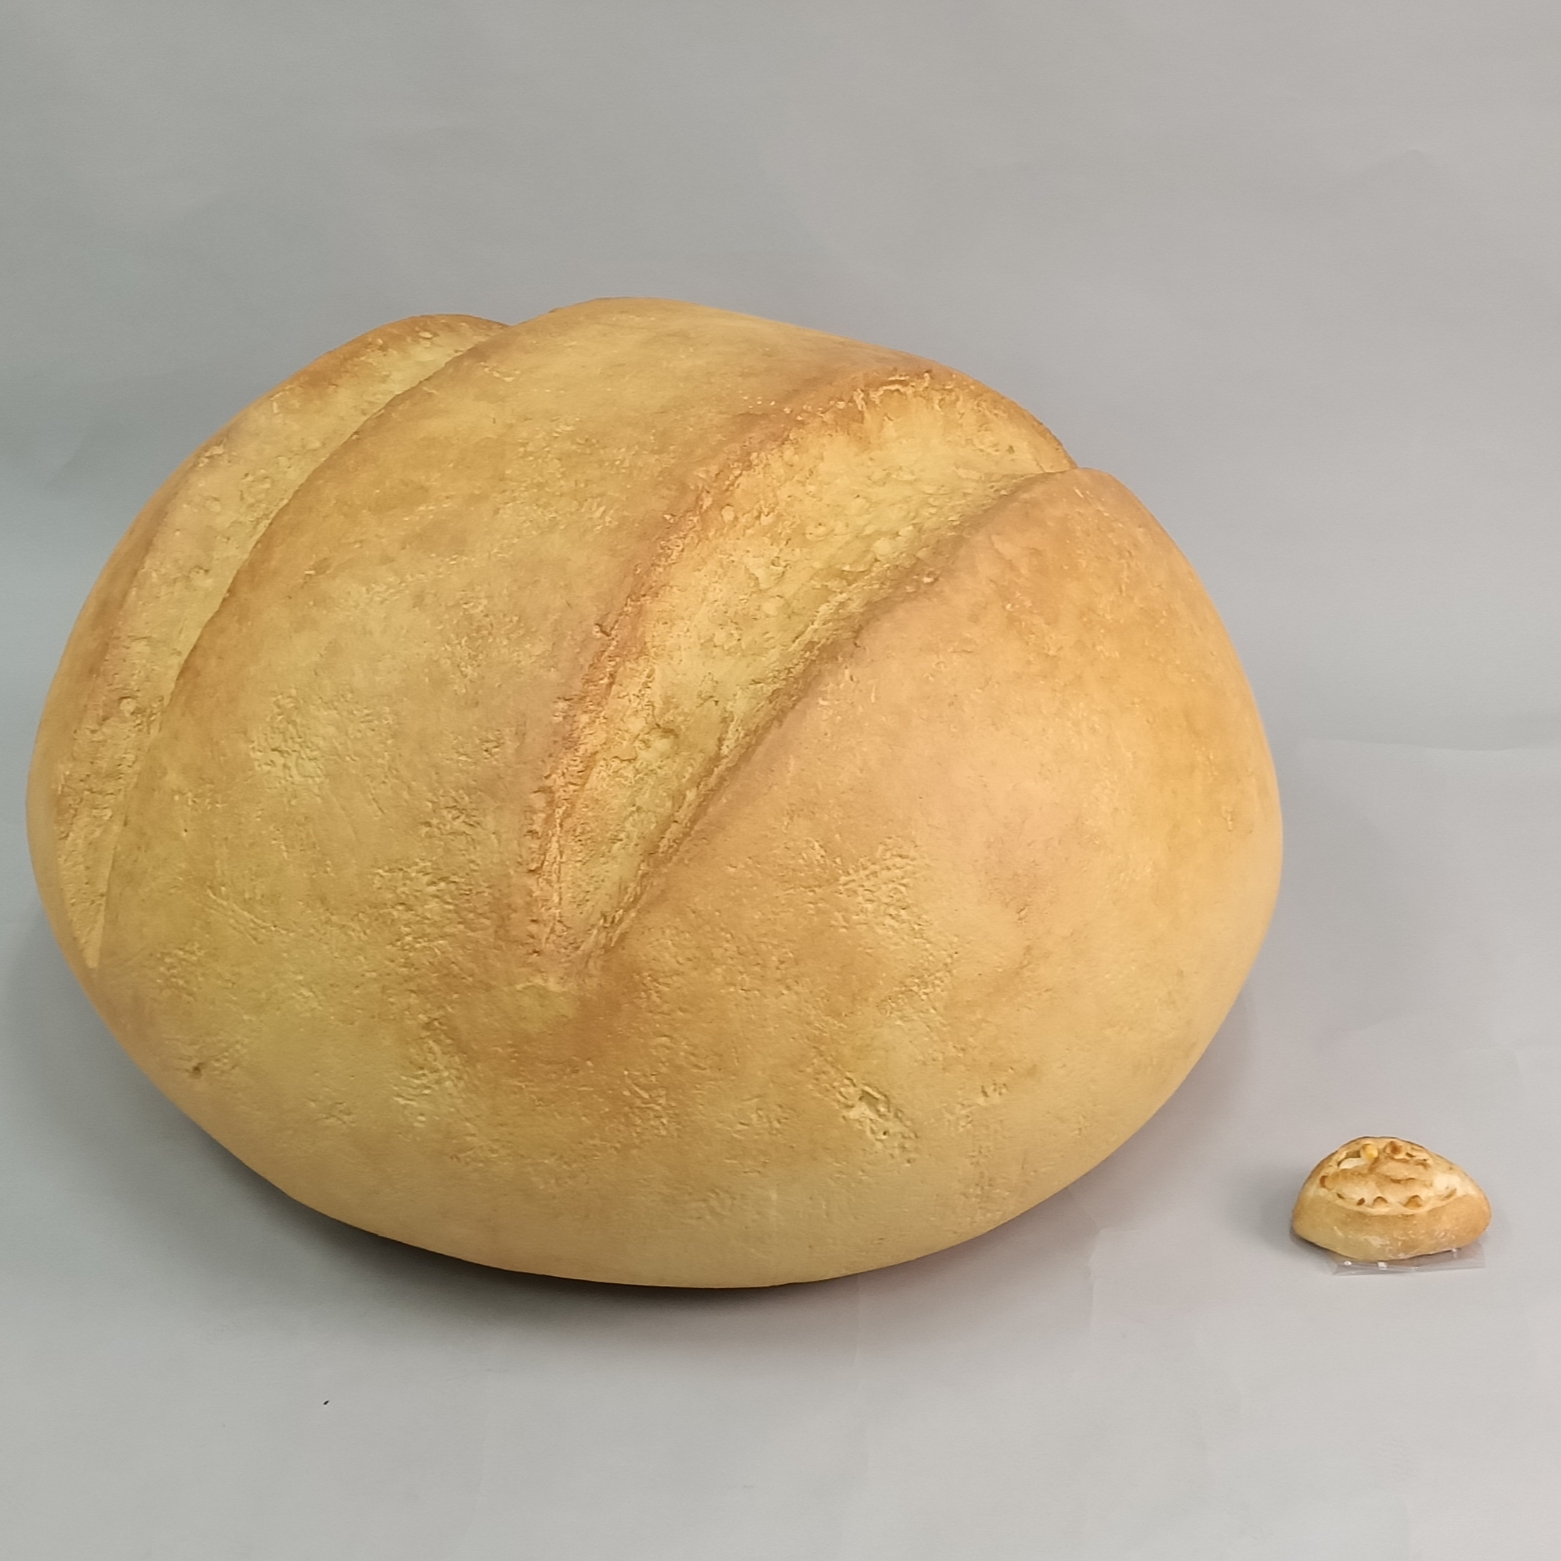 2022魔人社巨型麵包道具製作 Giant bread